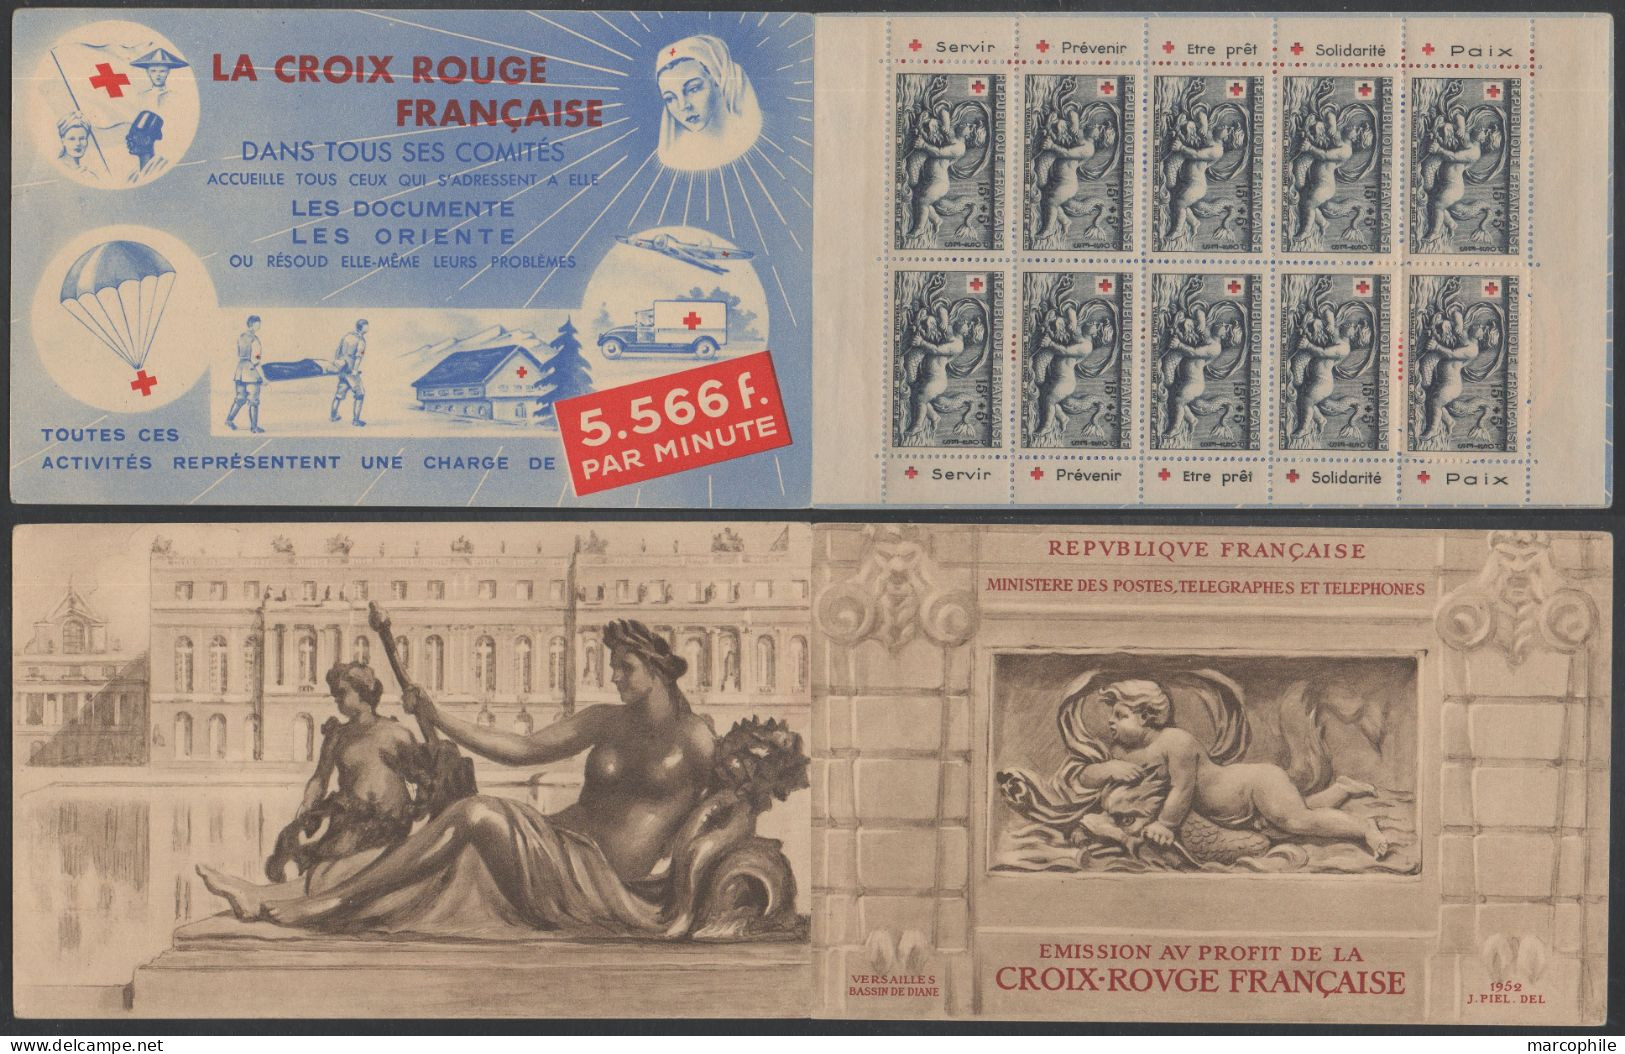 CARNET CROIX ROUGE 1952 / NEUF SANS CHARNIERE **  / COTE 550.00 € (ref 8063) - Rotes Kreuz